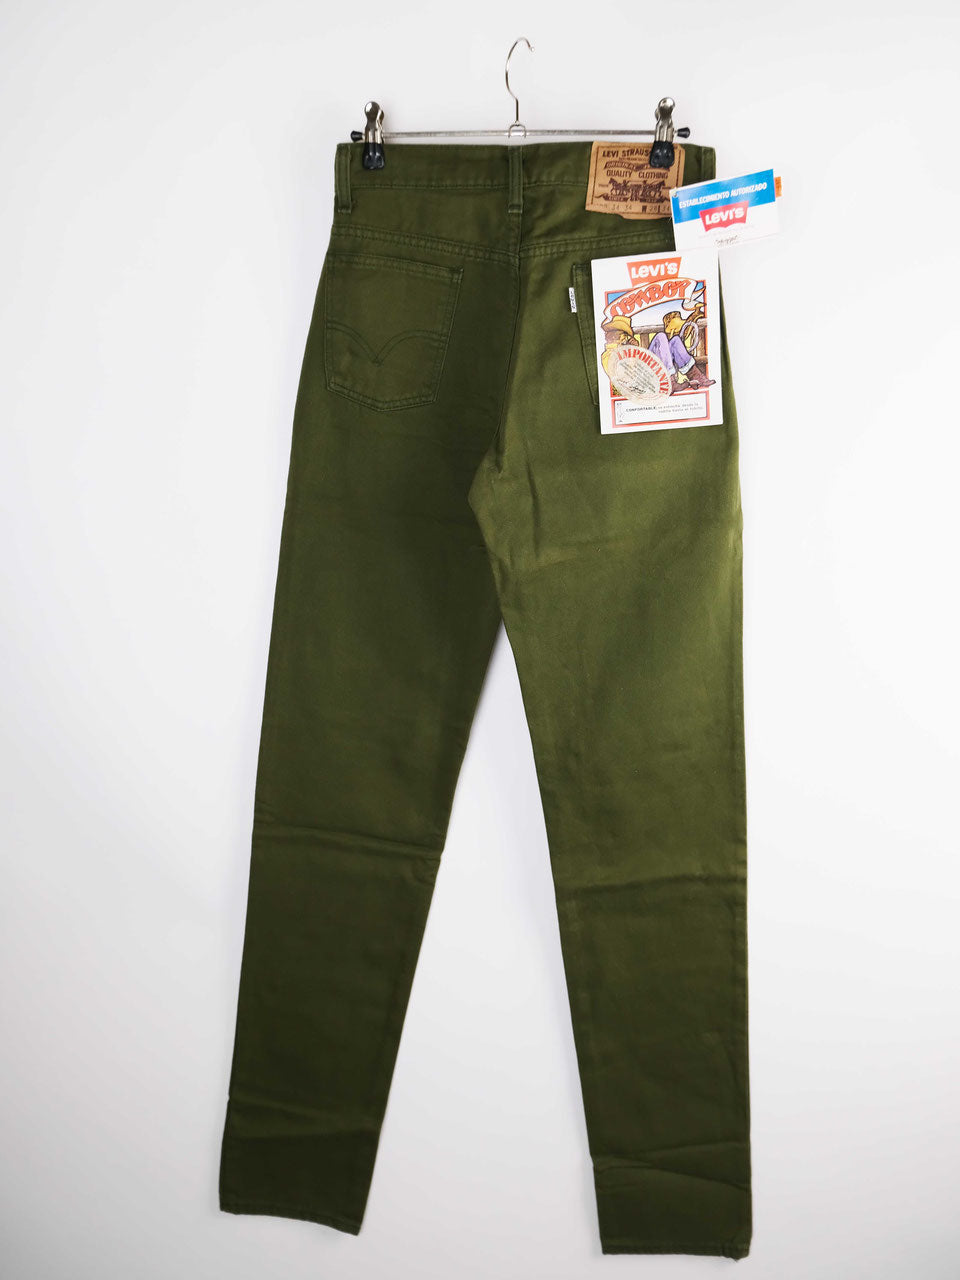 Levis jeans green deadstock w28